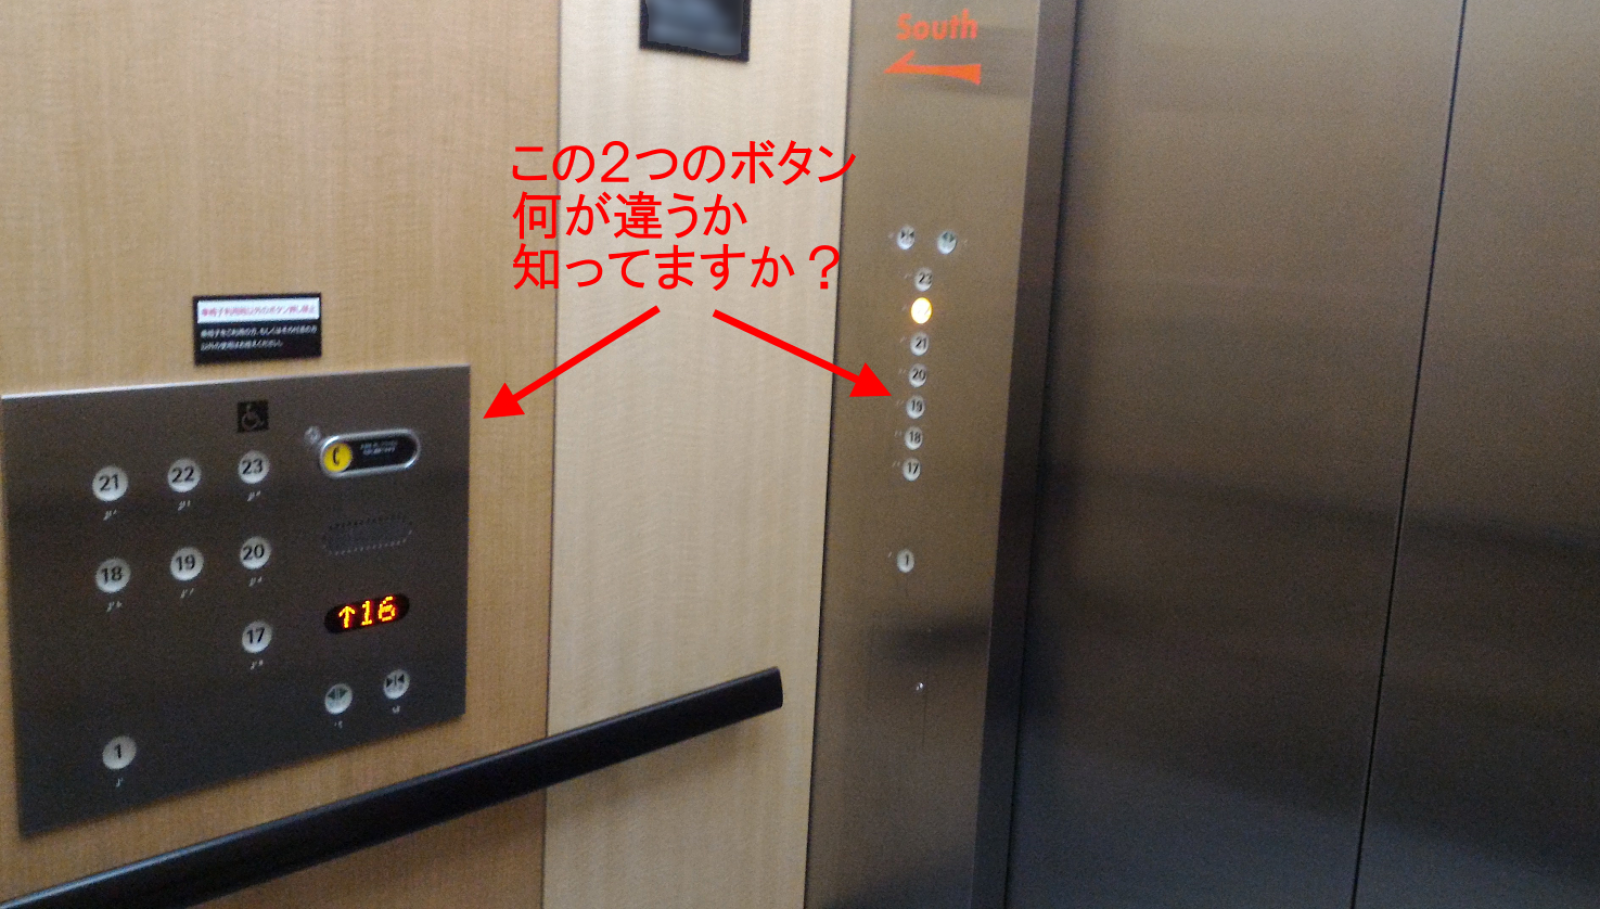 エレベーターの車椅子用ボタンには工夫が 意外と知らない仕組みを解説 初代編集長ブログ 安田英久 Web担当者forum